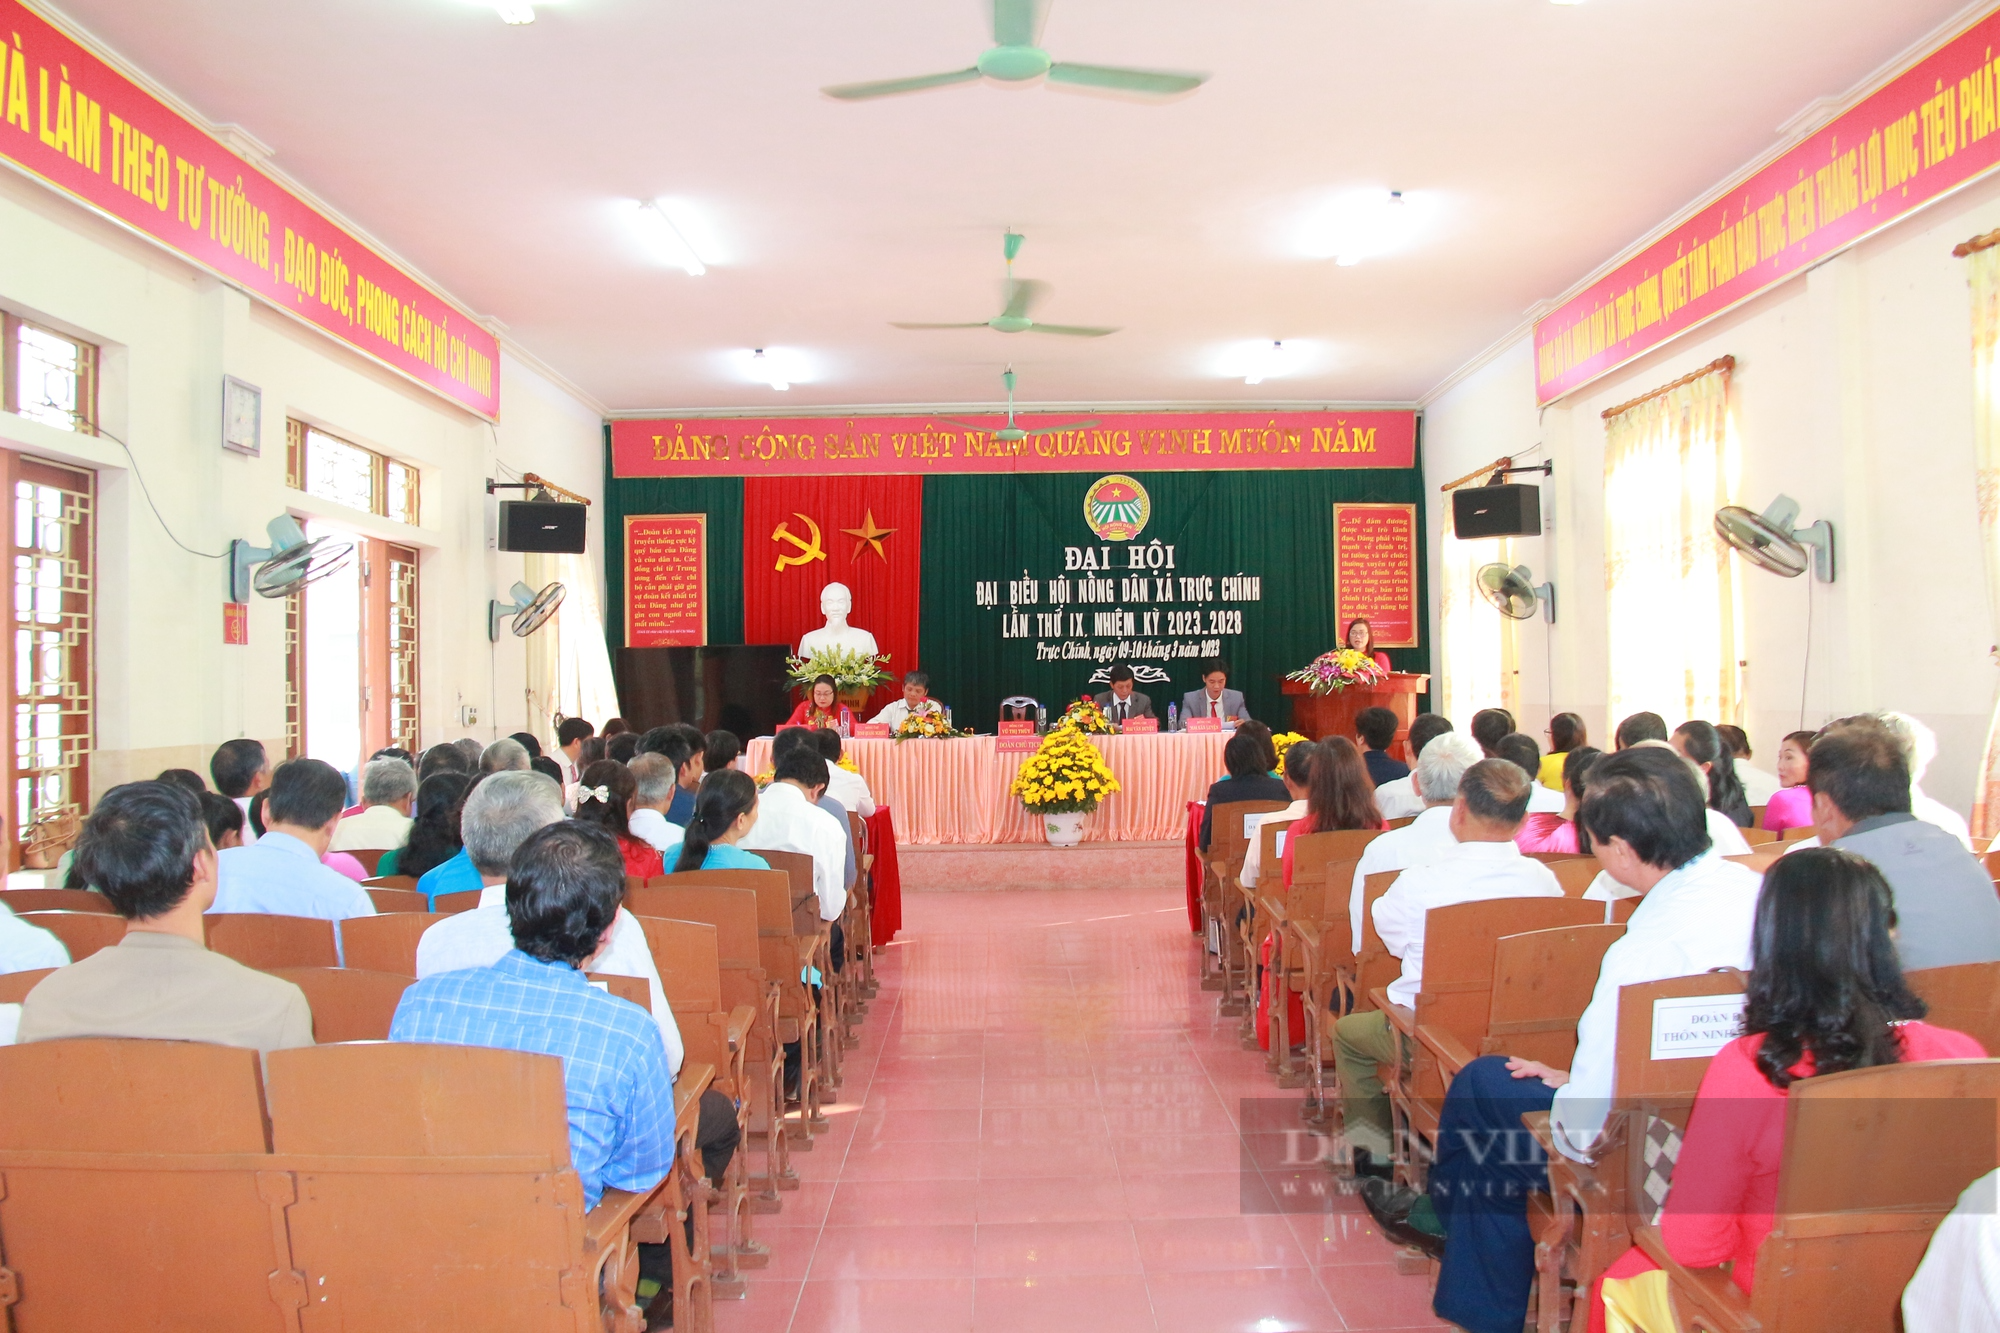 Đại hội Hội Nông dân cấp cơ sở ở tỉnh Nam Định diễn ra theo đúng kế hoạch - Ảnh 2.